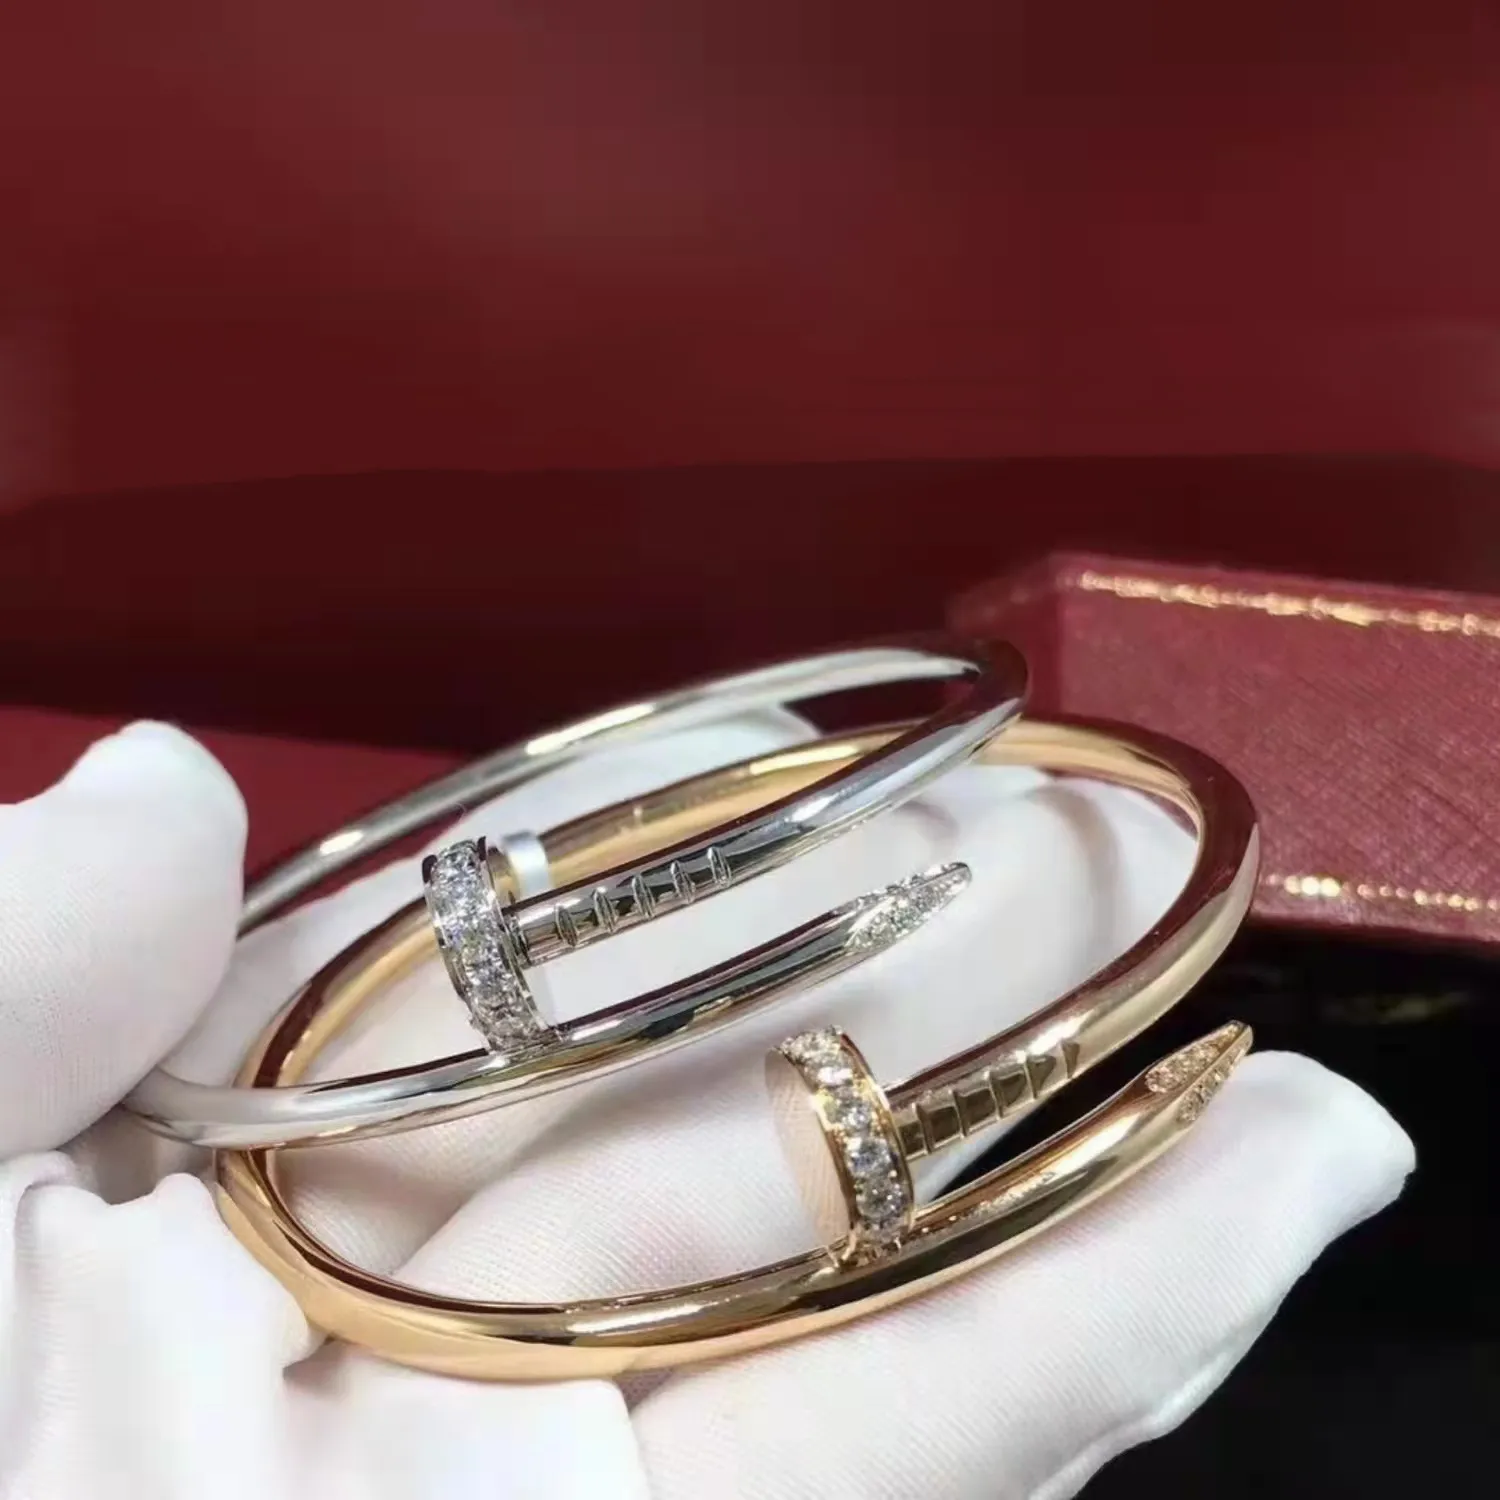 Модельеры Браслеты Очаровательные браслеты ювелирные изделия высокого качества Классический мужской браслет не выцветающие украшения подарок для мужчин и женщин1992